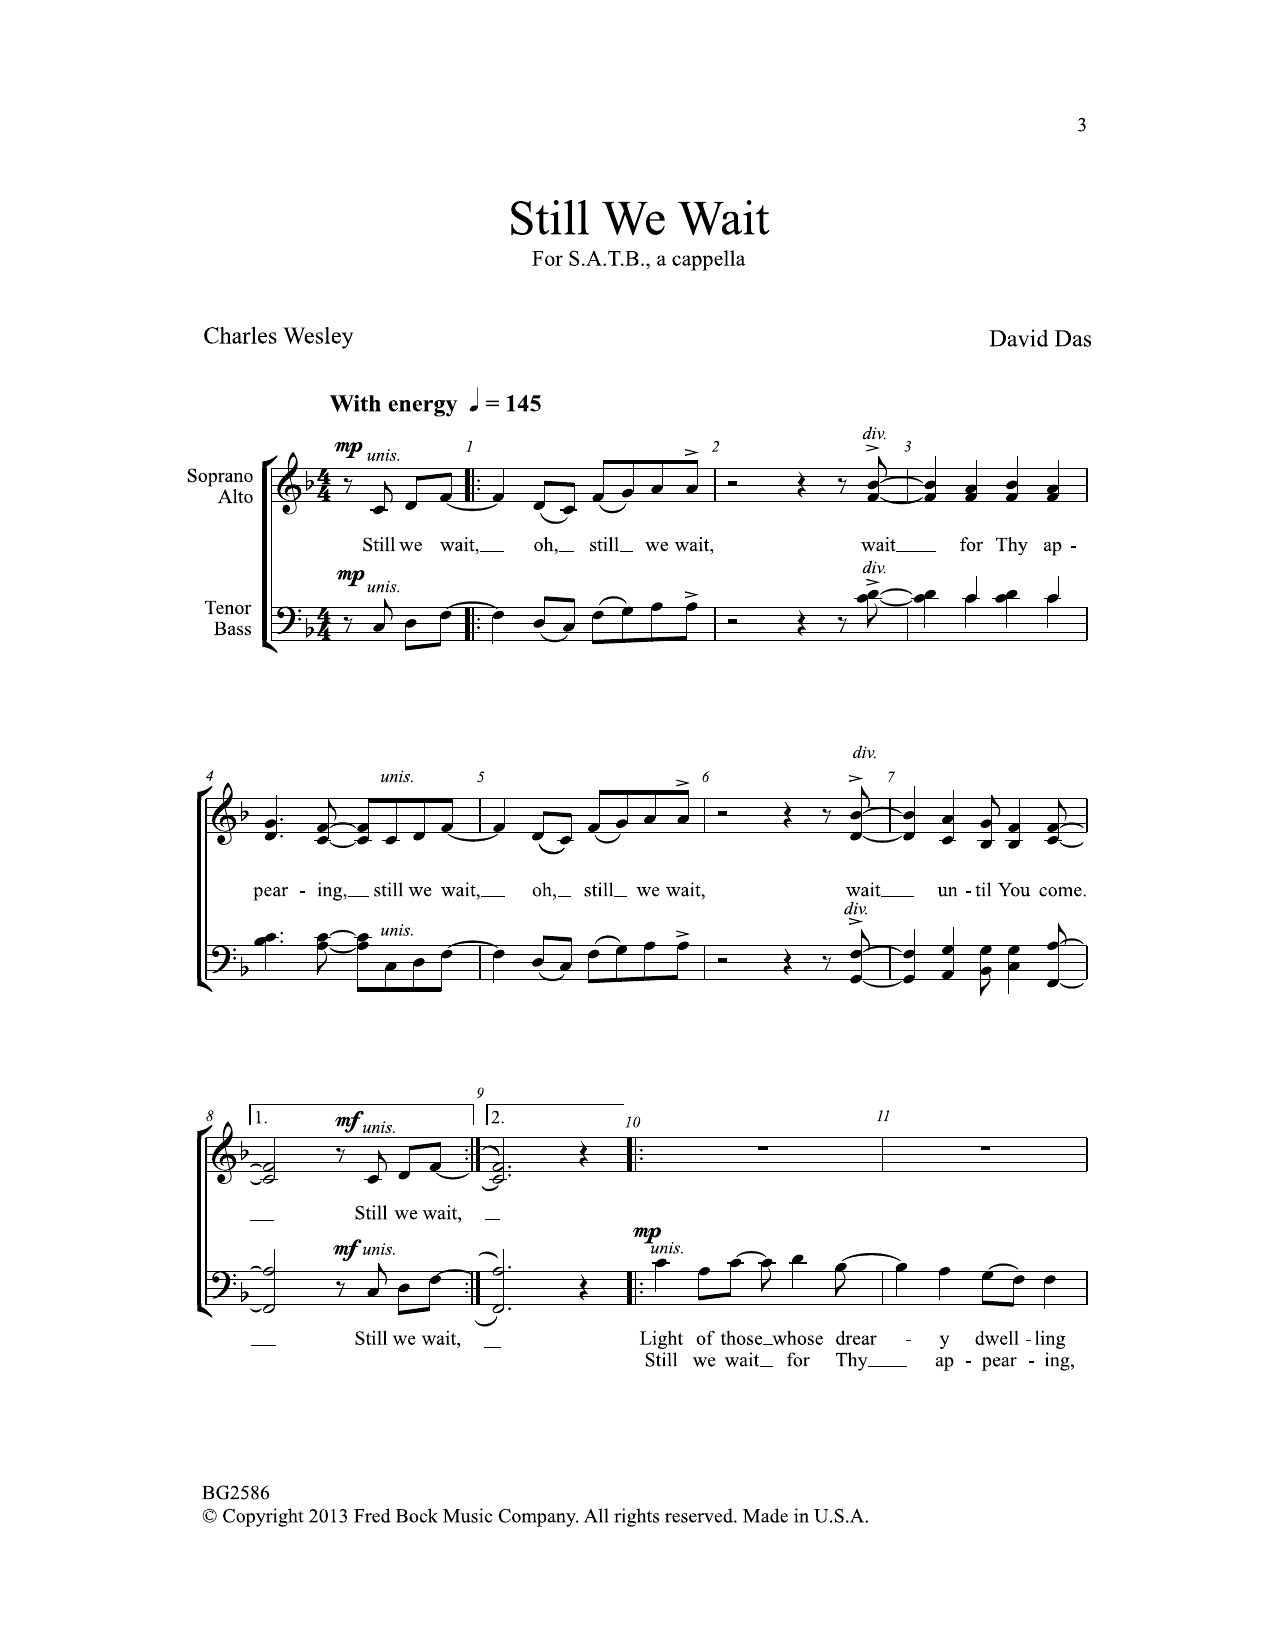 David Das Still We Wait sheet music notes and chords arranged for SATB Choir